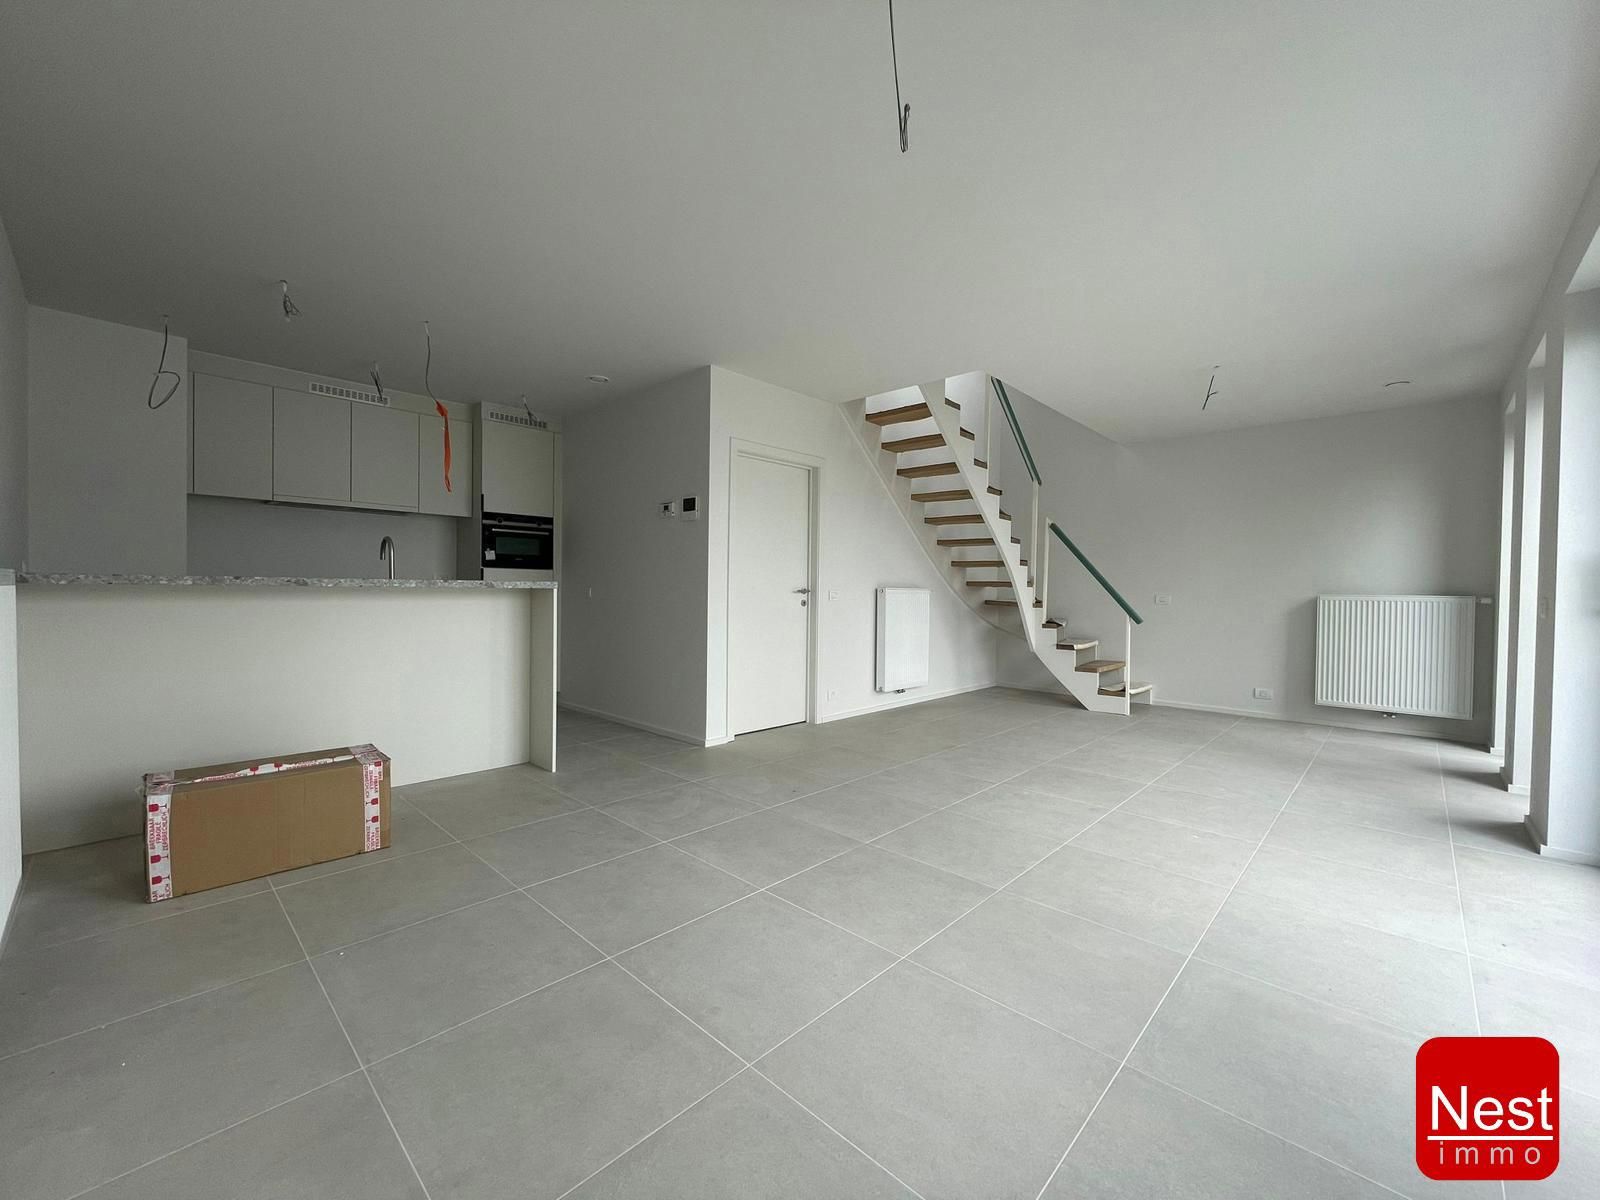 Appartement te koop Ninoofsesteenweg 1032 - 1700 Dilbeek